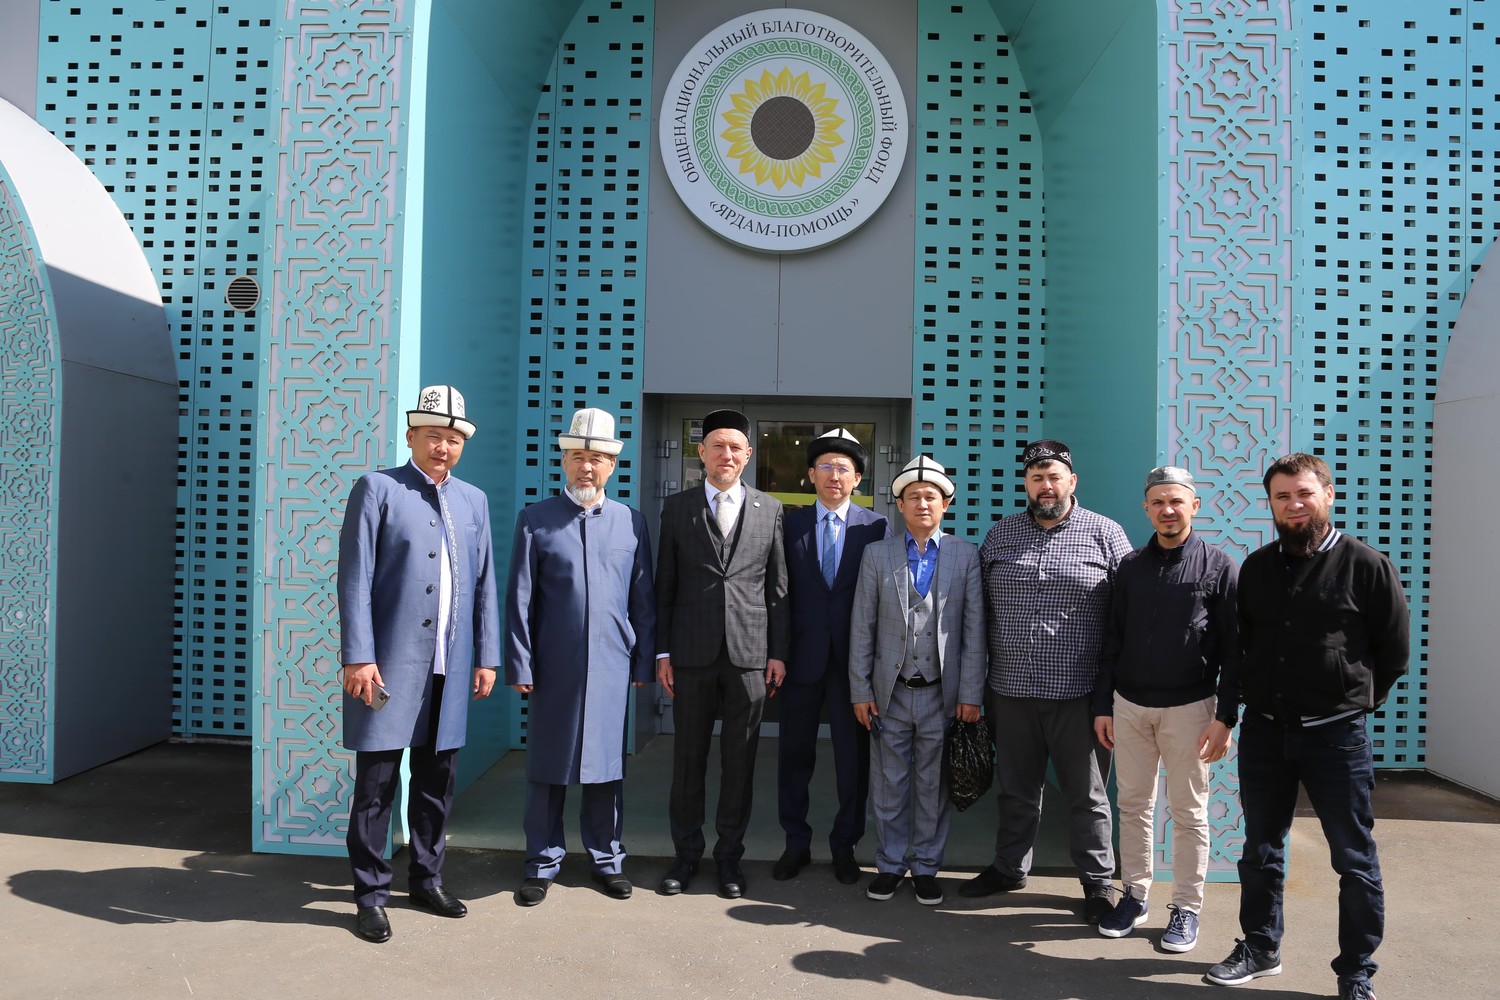 Первый заместитель муфтия Кыргызстана: Все что мы увидели здесь произвело на нас очень сильное впечатление